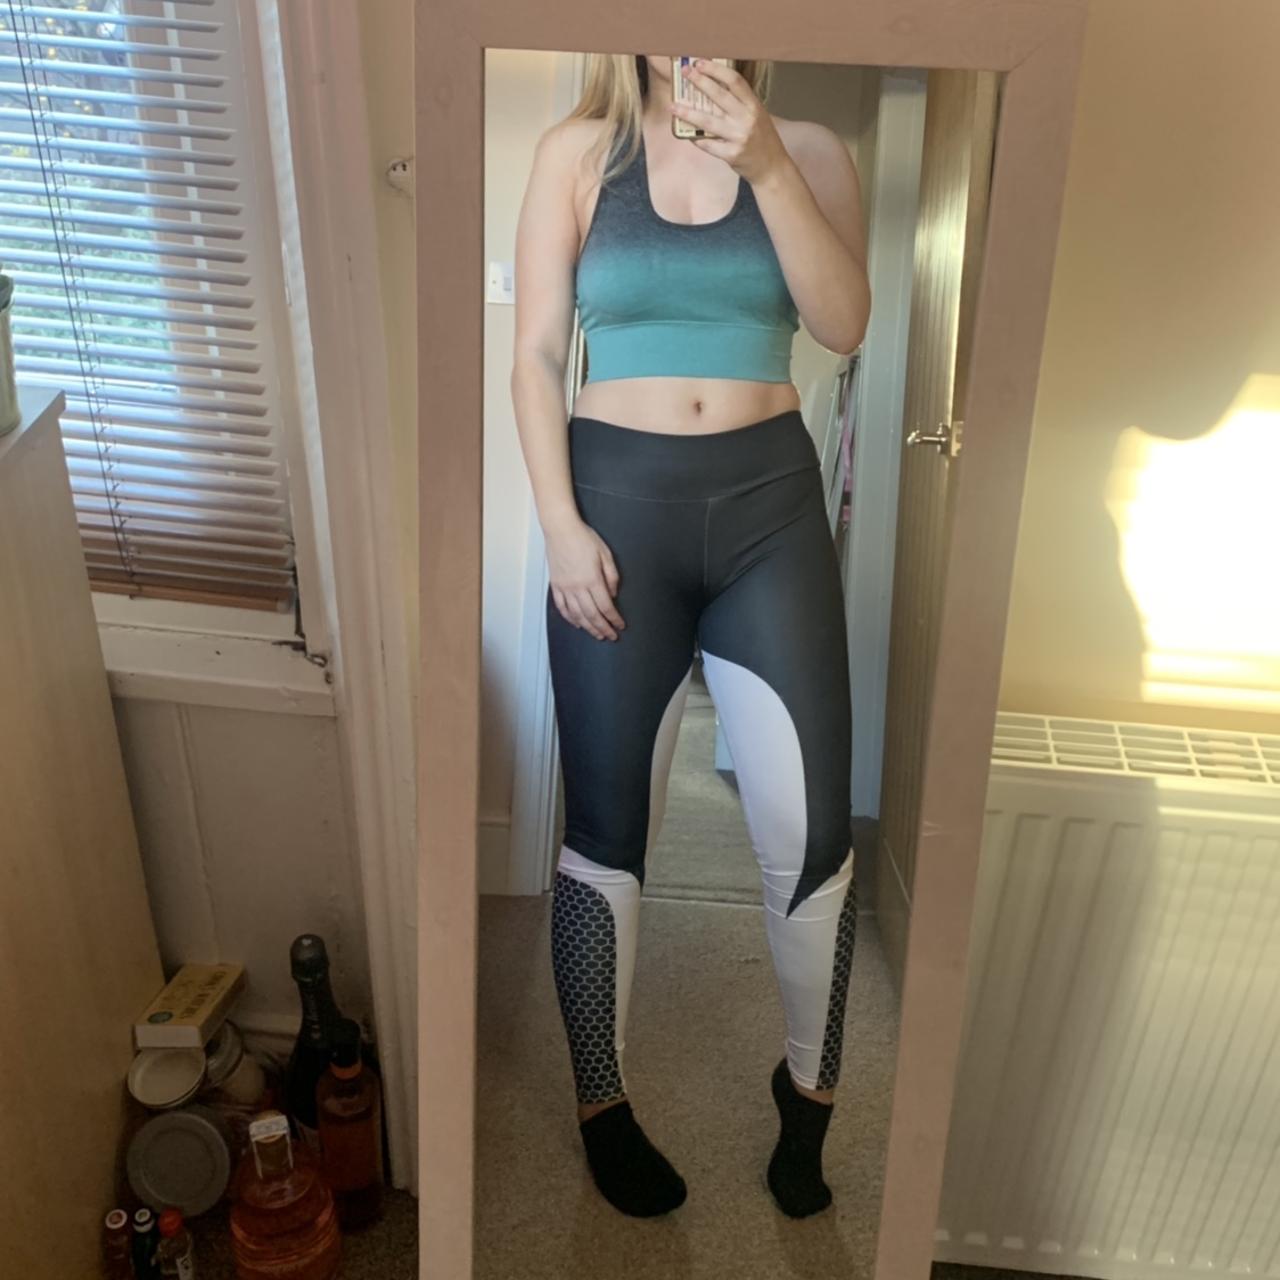 Zaful two tone workout gym leggings, size XL (not - Depop